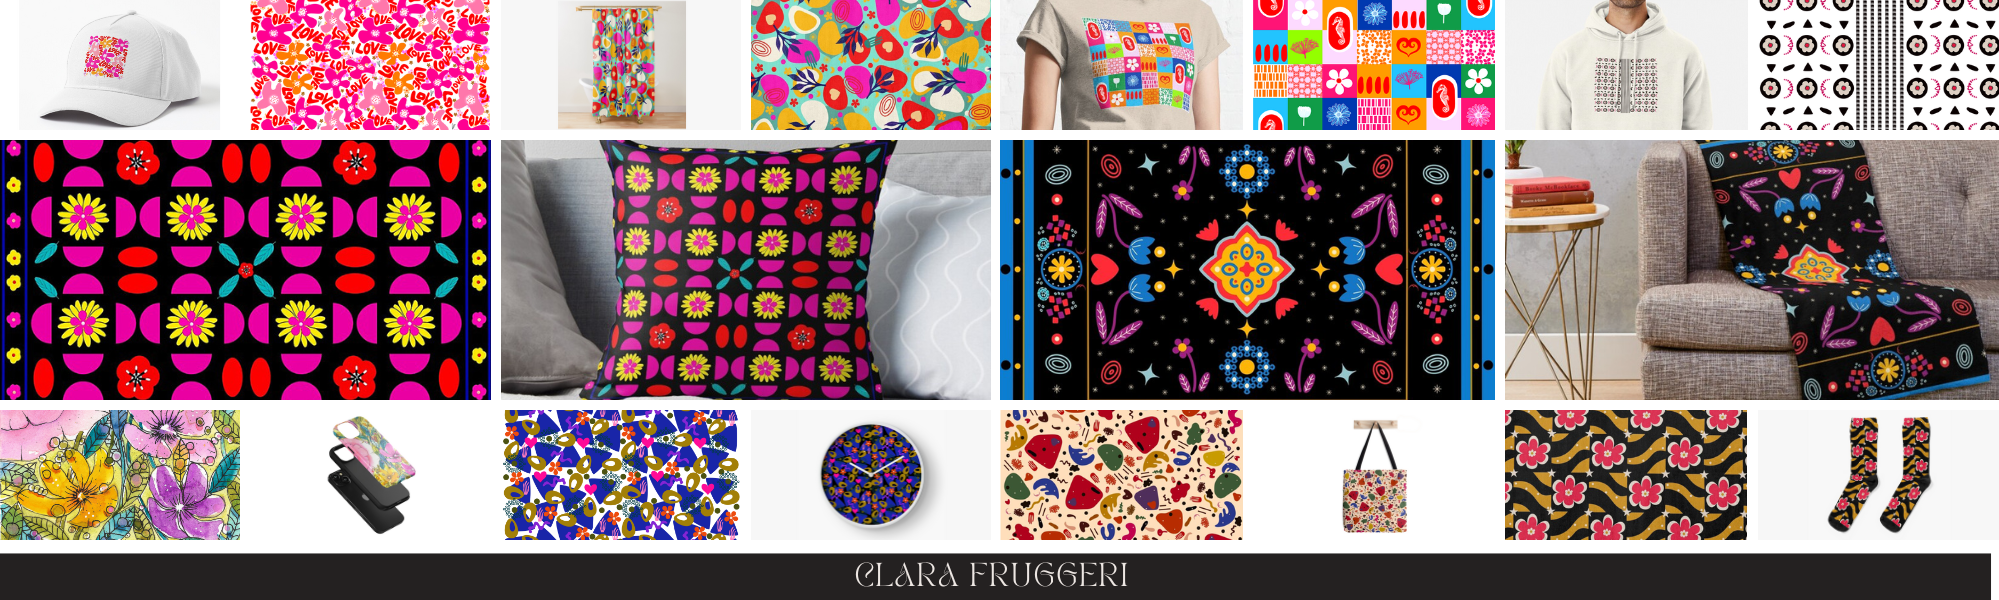 Clara Fruggeri, Graphic designer, artist and illustrator